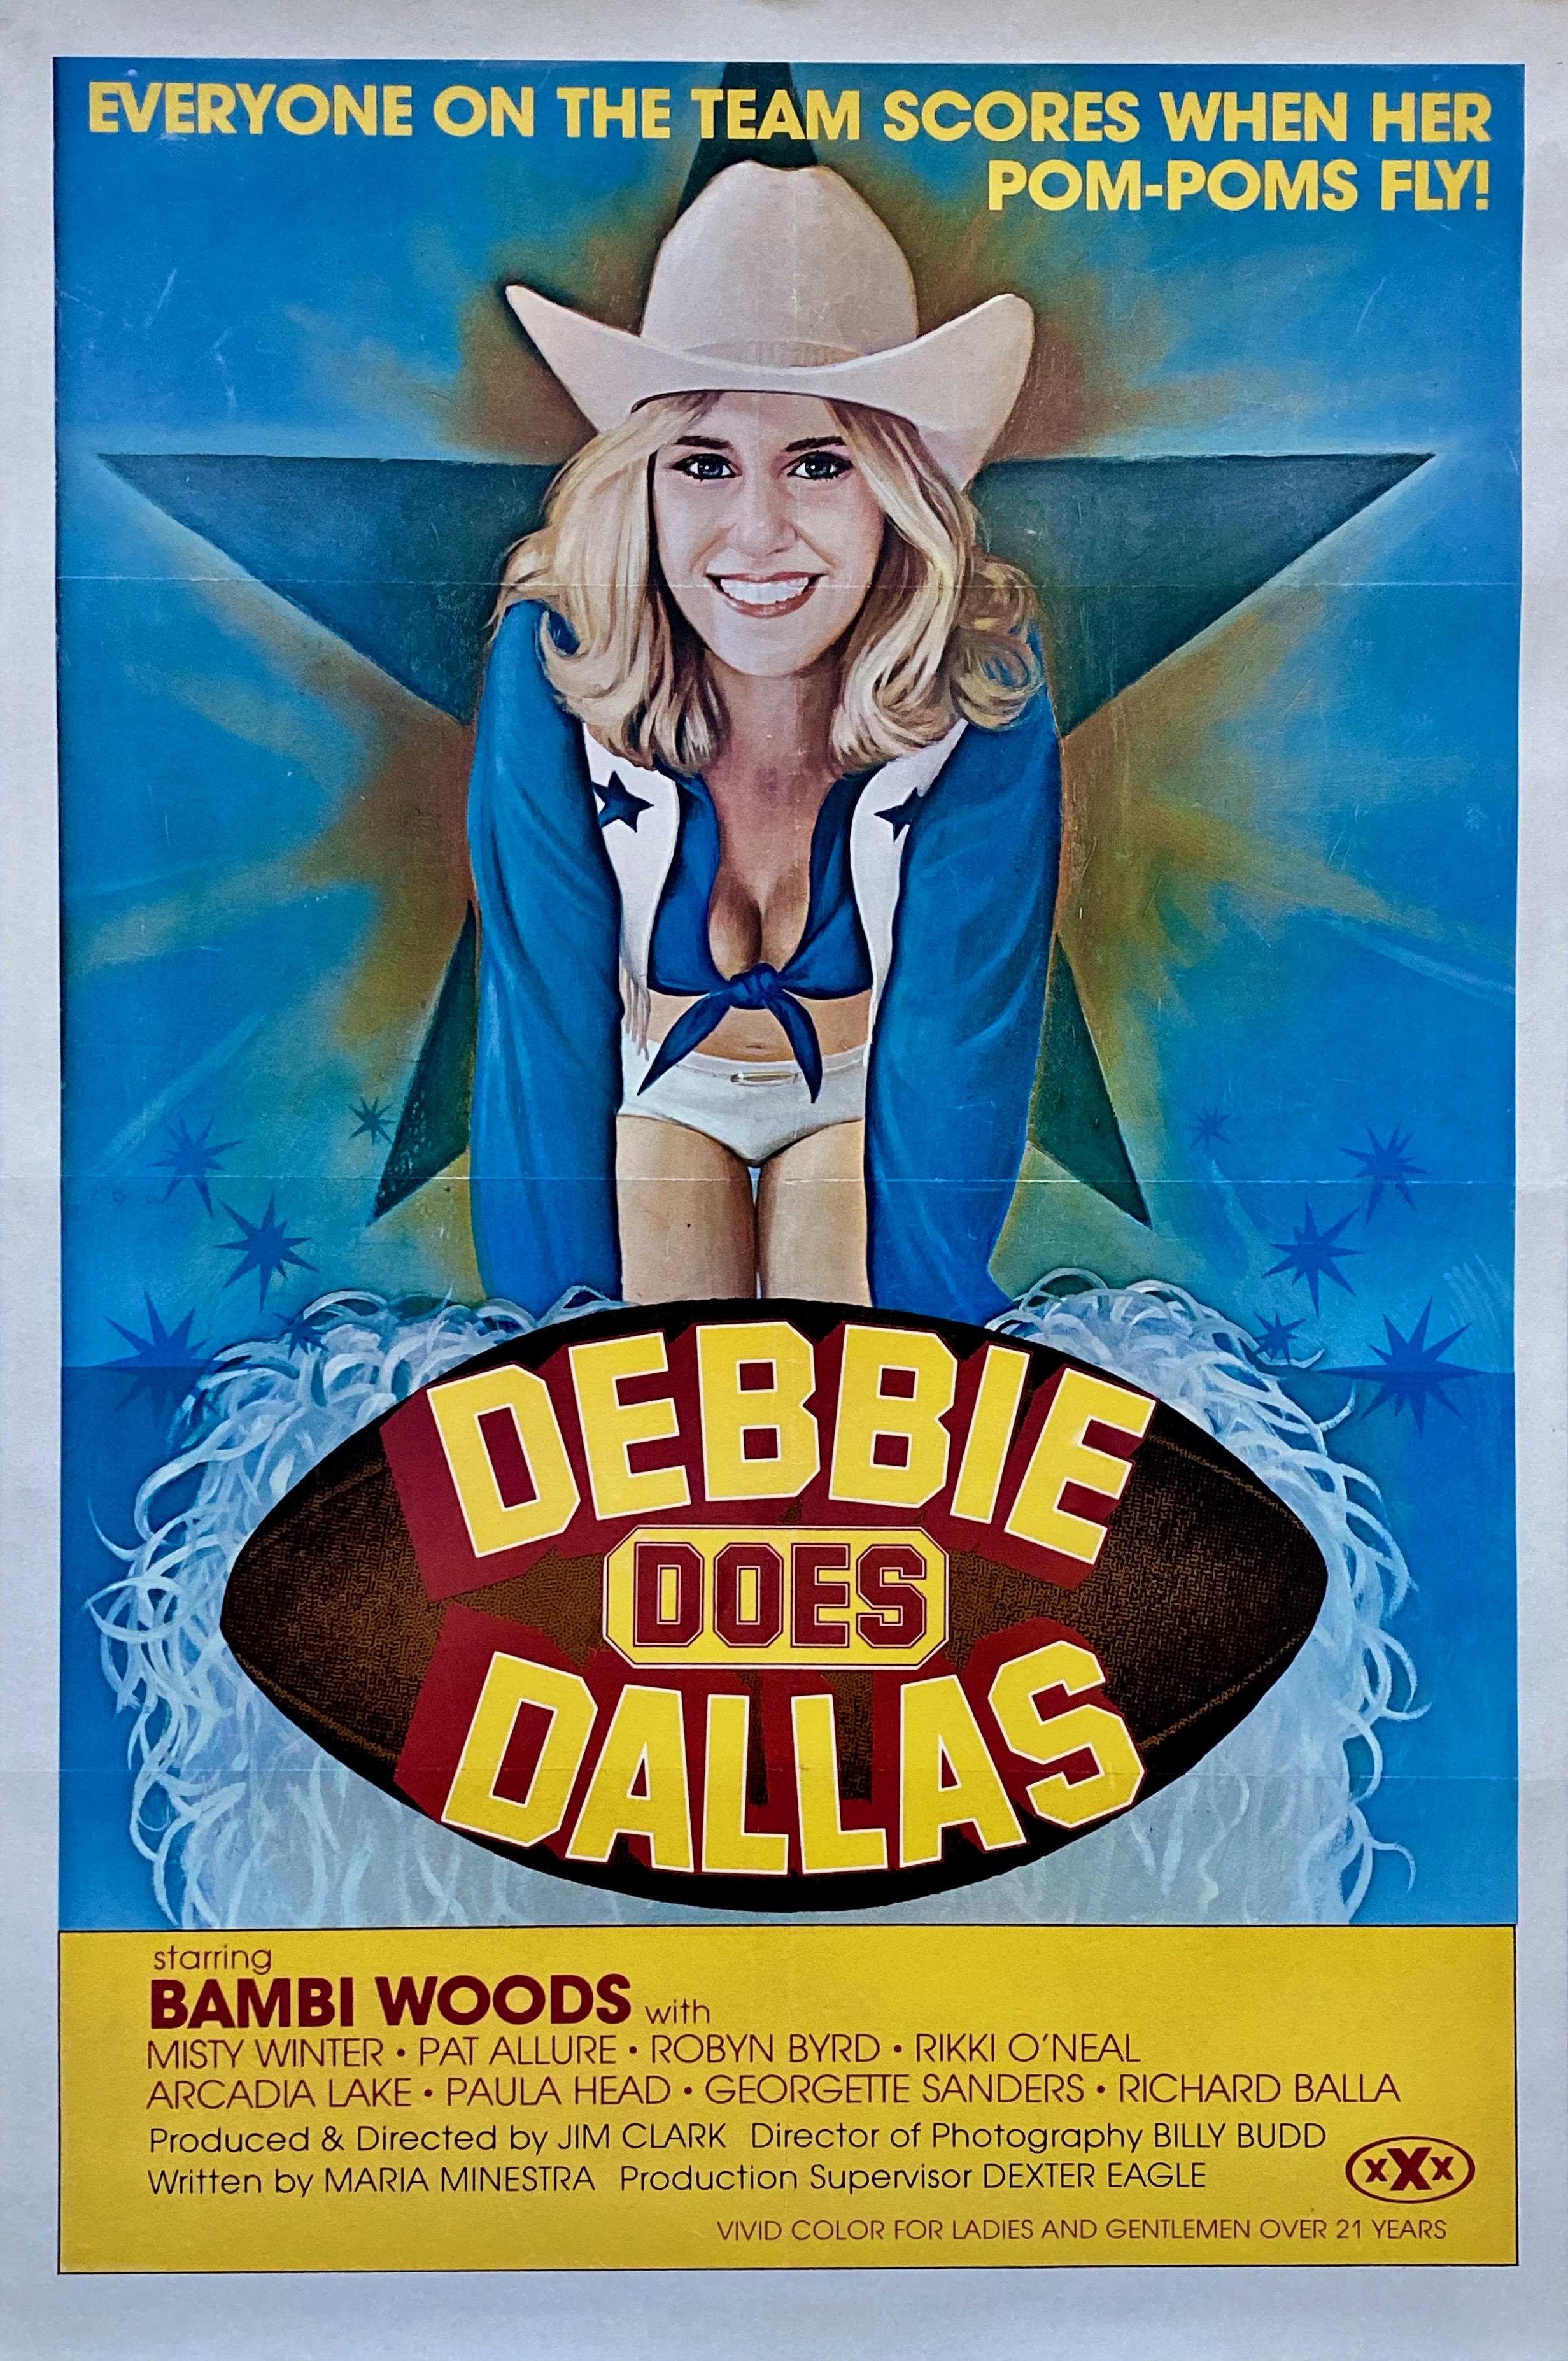 Debbie does to dallas